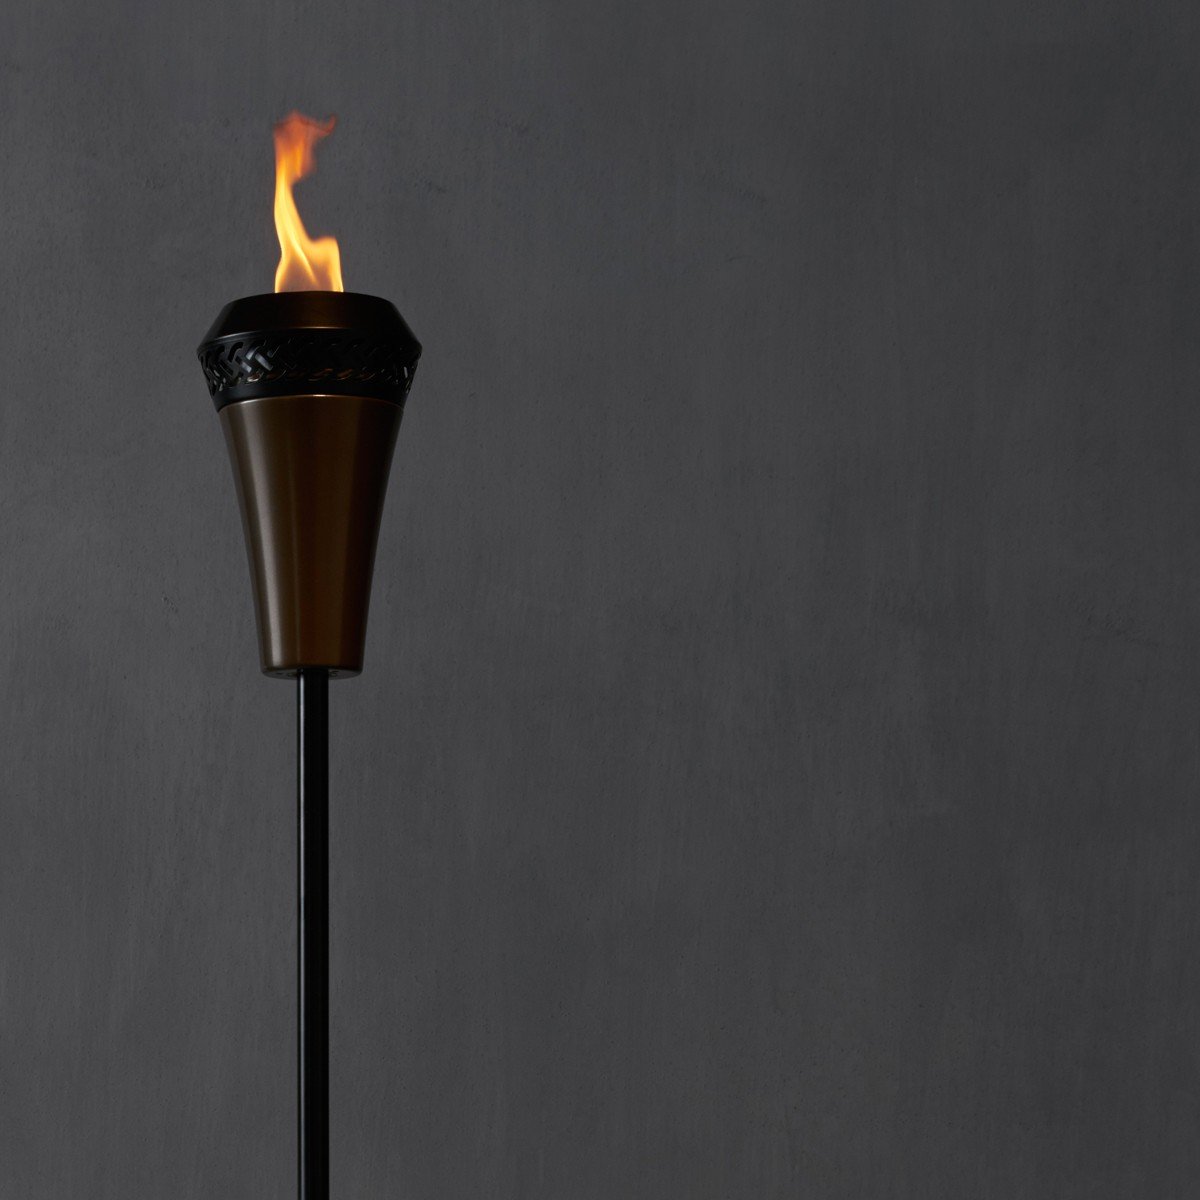 Py torch. Факел. Факел деревянный. Уличный фонарь с огнем. Средневековый факел.